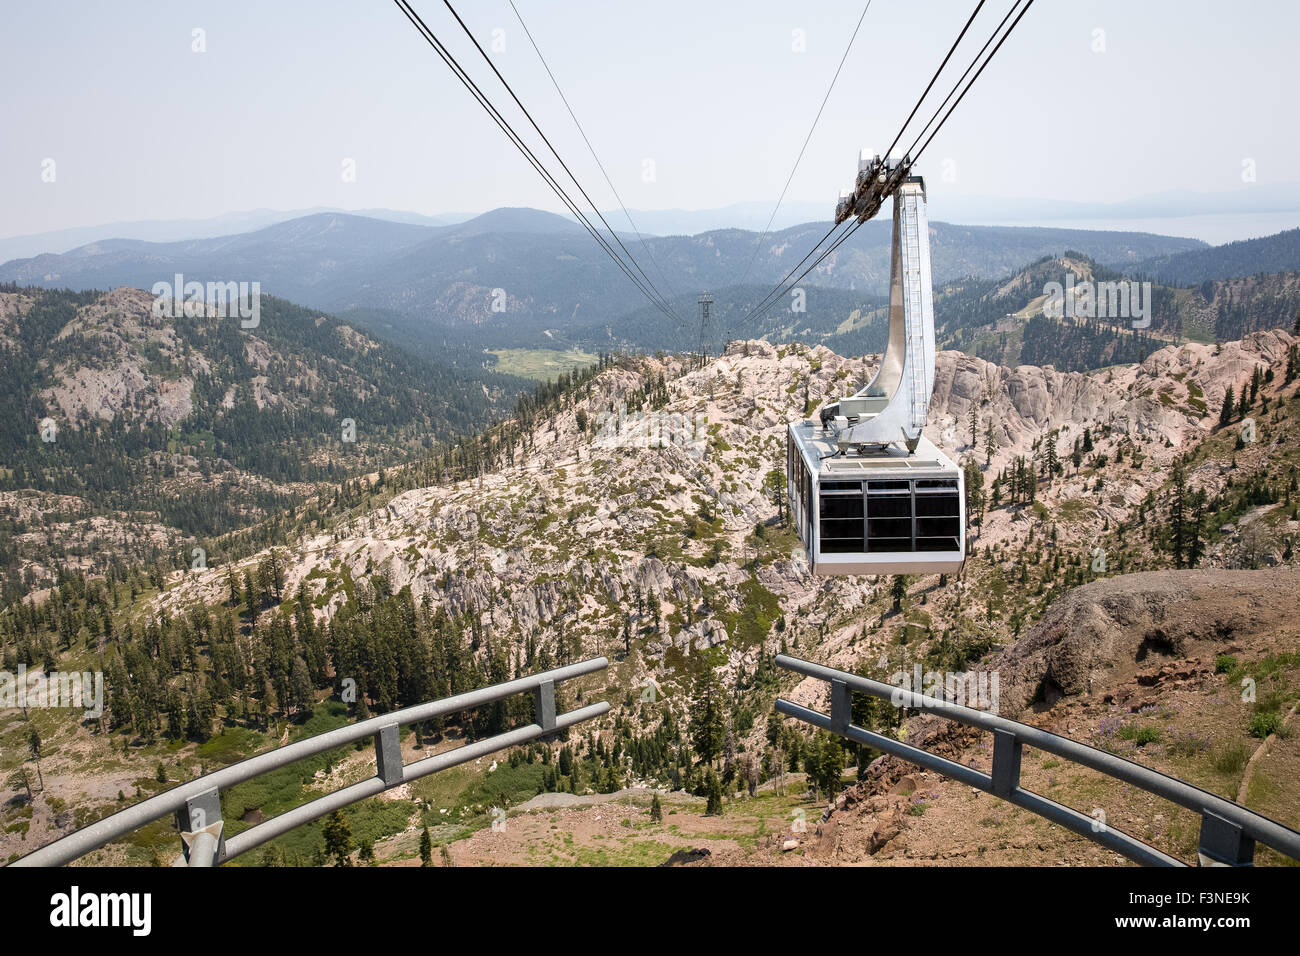 Drammatica vista di un appeso in gondola. La fermata del tram si sta avvicinando la cima della montagna presso Squaw Valley, un western USA ski resort. Foto Stock